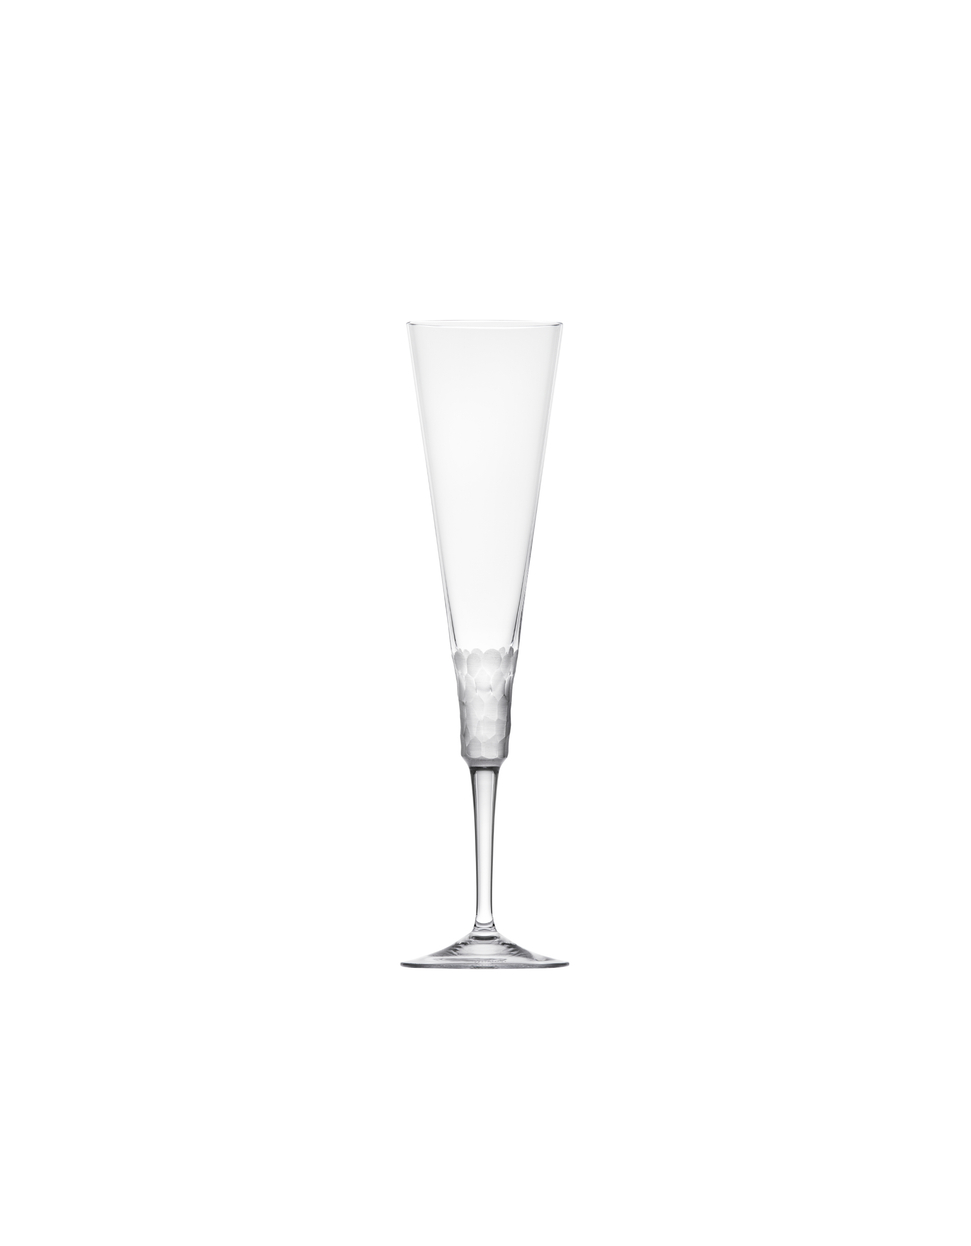 Fluent champagne glass, 170 ml